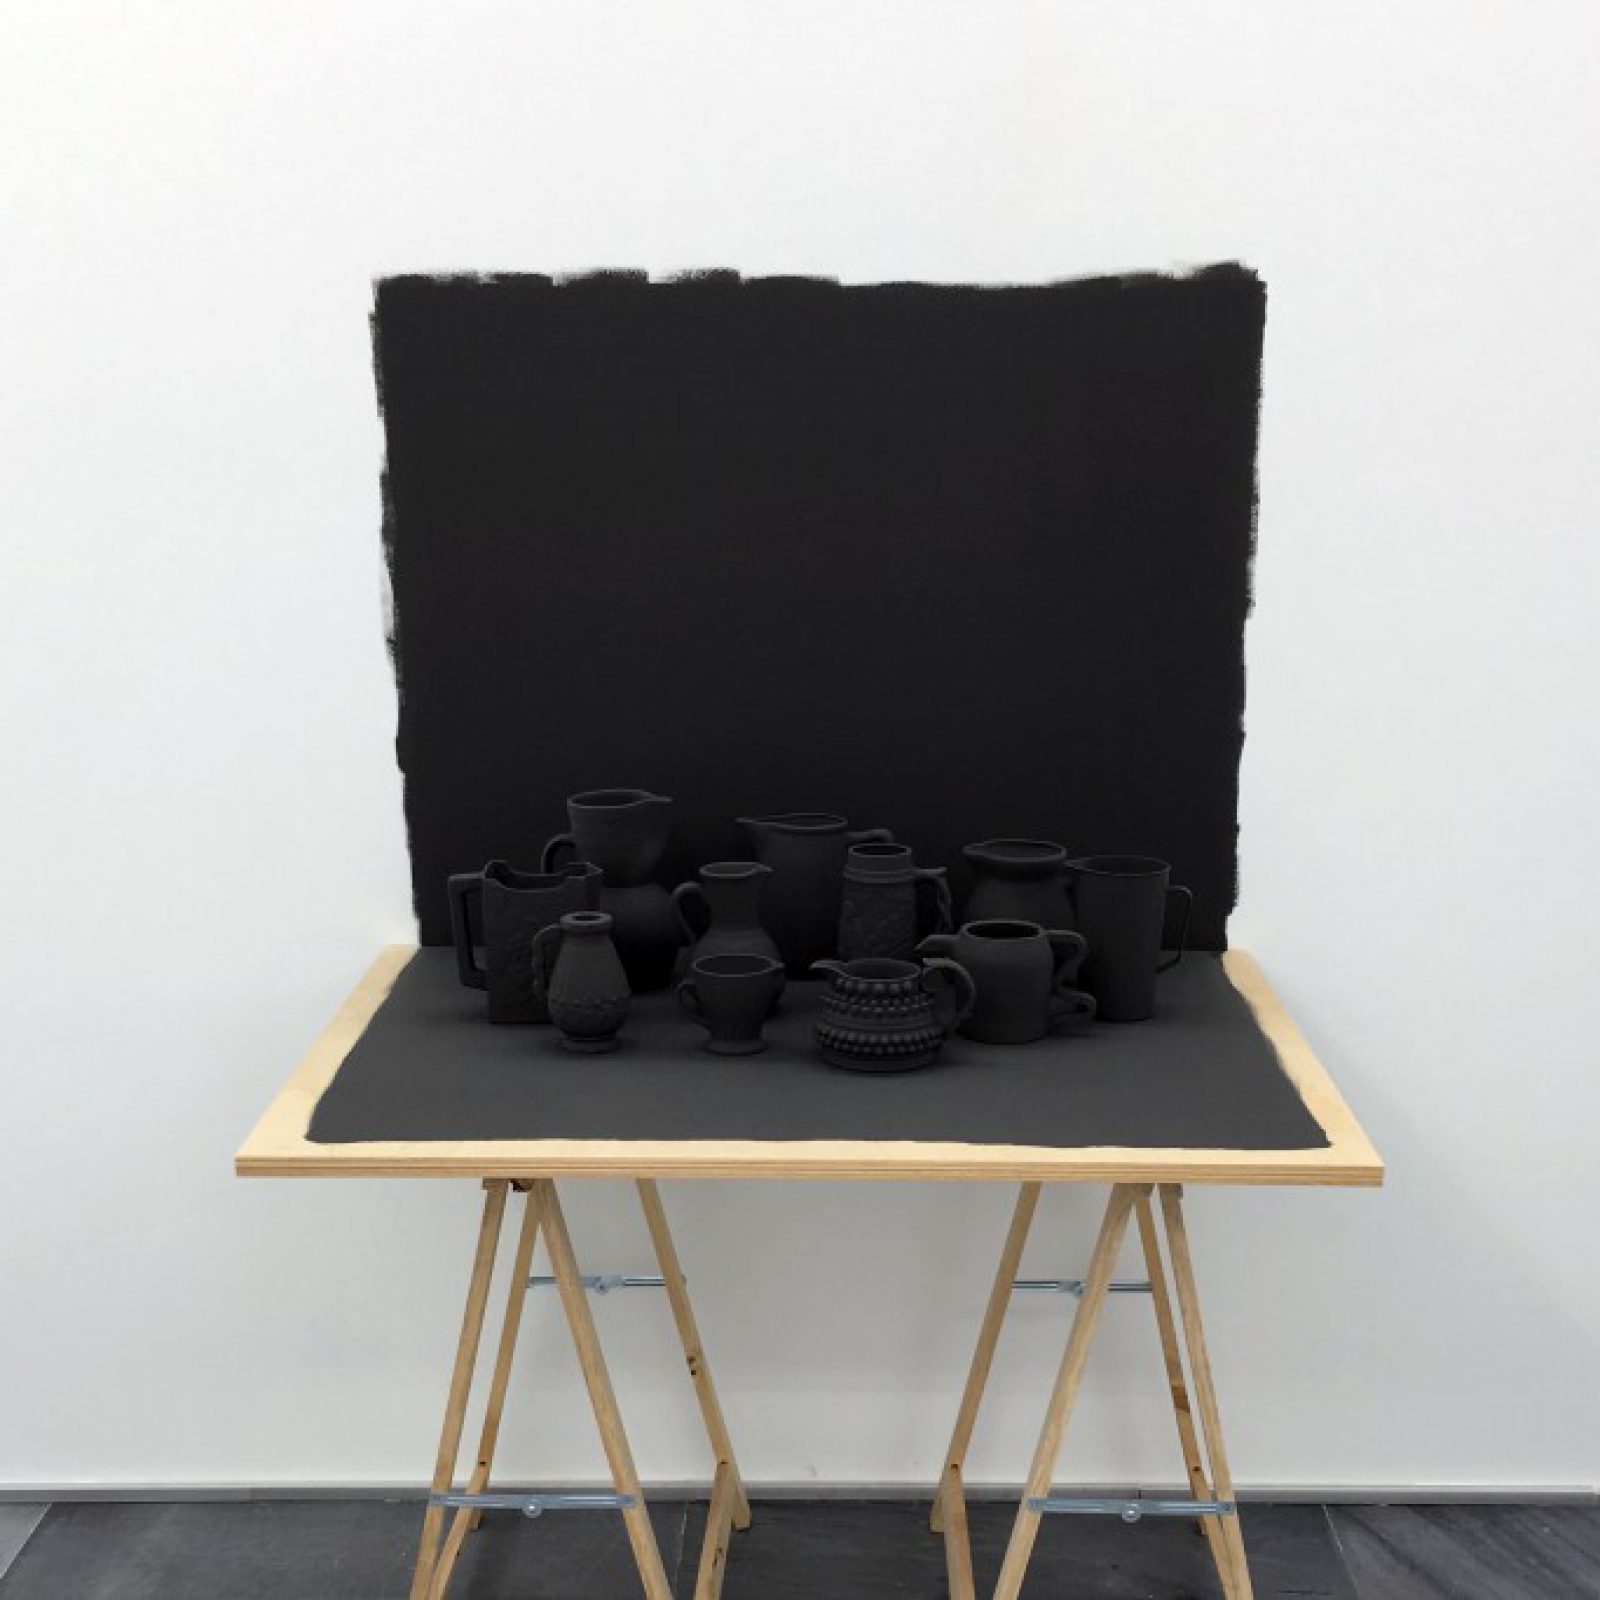 Grey Table (2017), instalación parte de la muestra Setting the Record Straight (Dejando constancia de la medida correcta) de Miguel Ángel Gaüeca en Galería Espacio Mínimo, Madrid. Foto: cortesía de la galería.